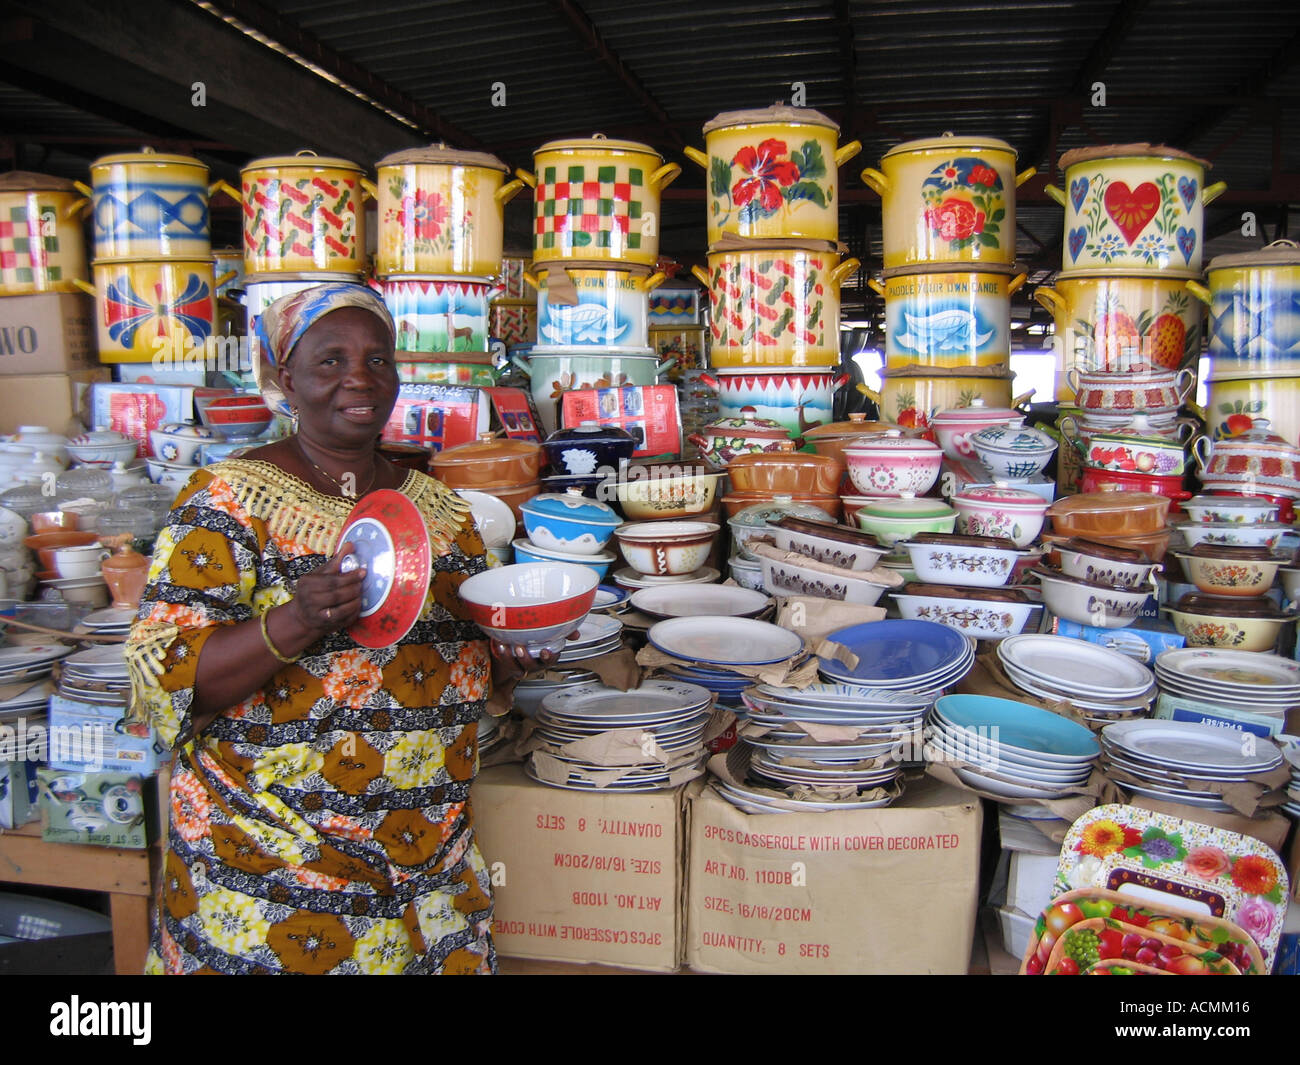 Geschirr Hersteller Großmarkt Lome Togo Westafrika Stockfotografie - Alamy